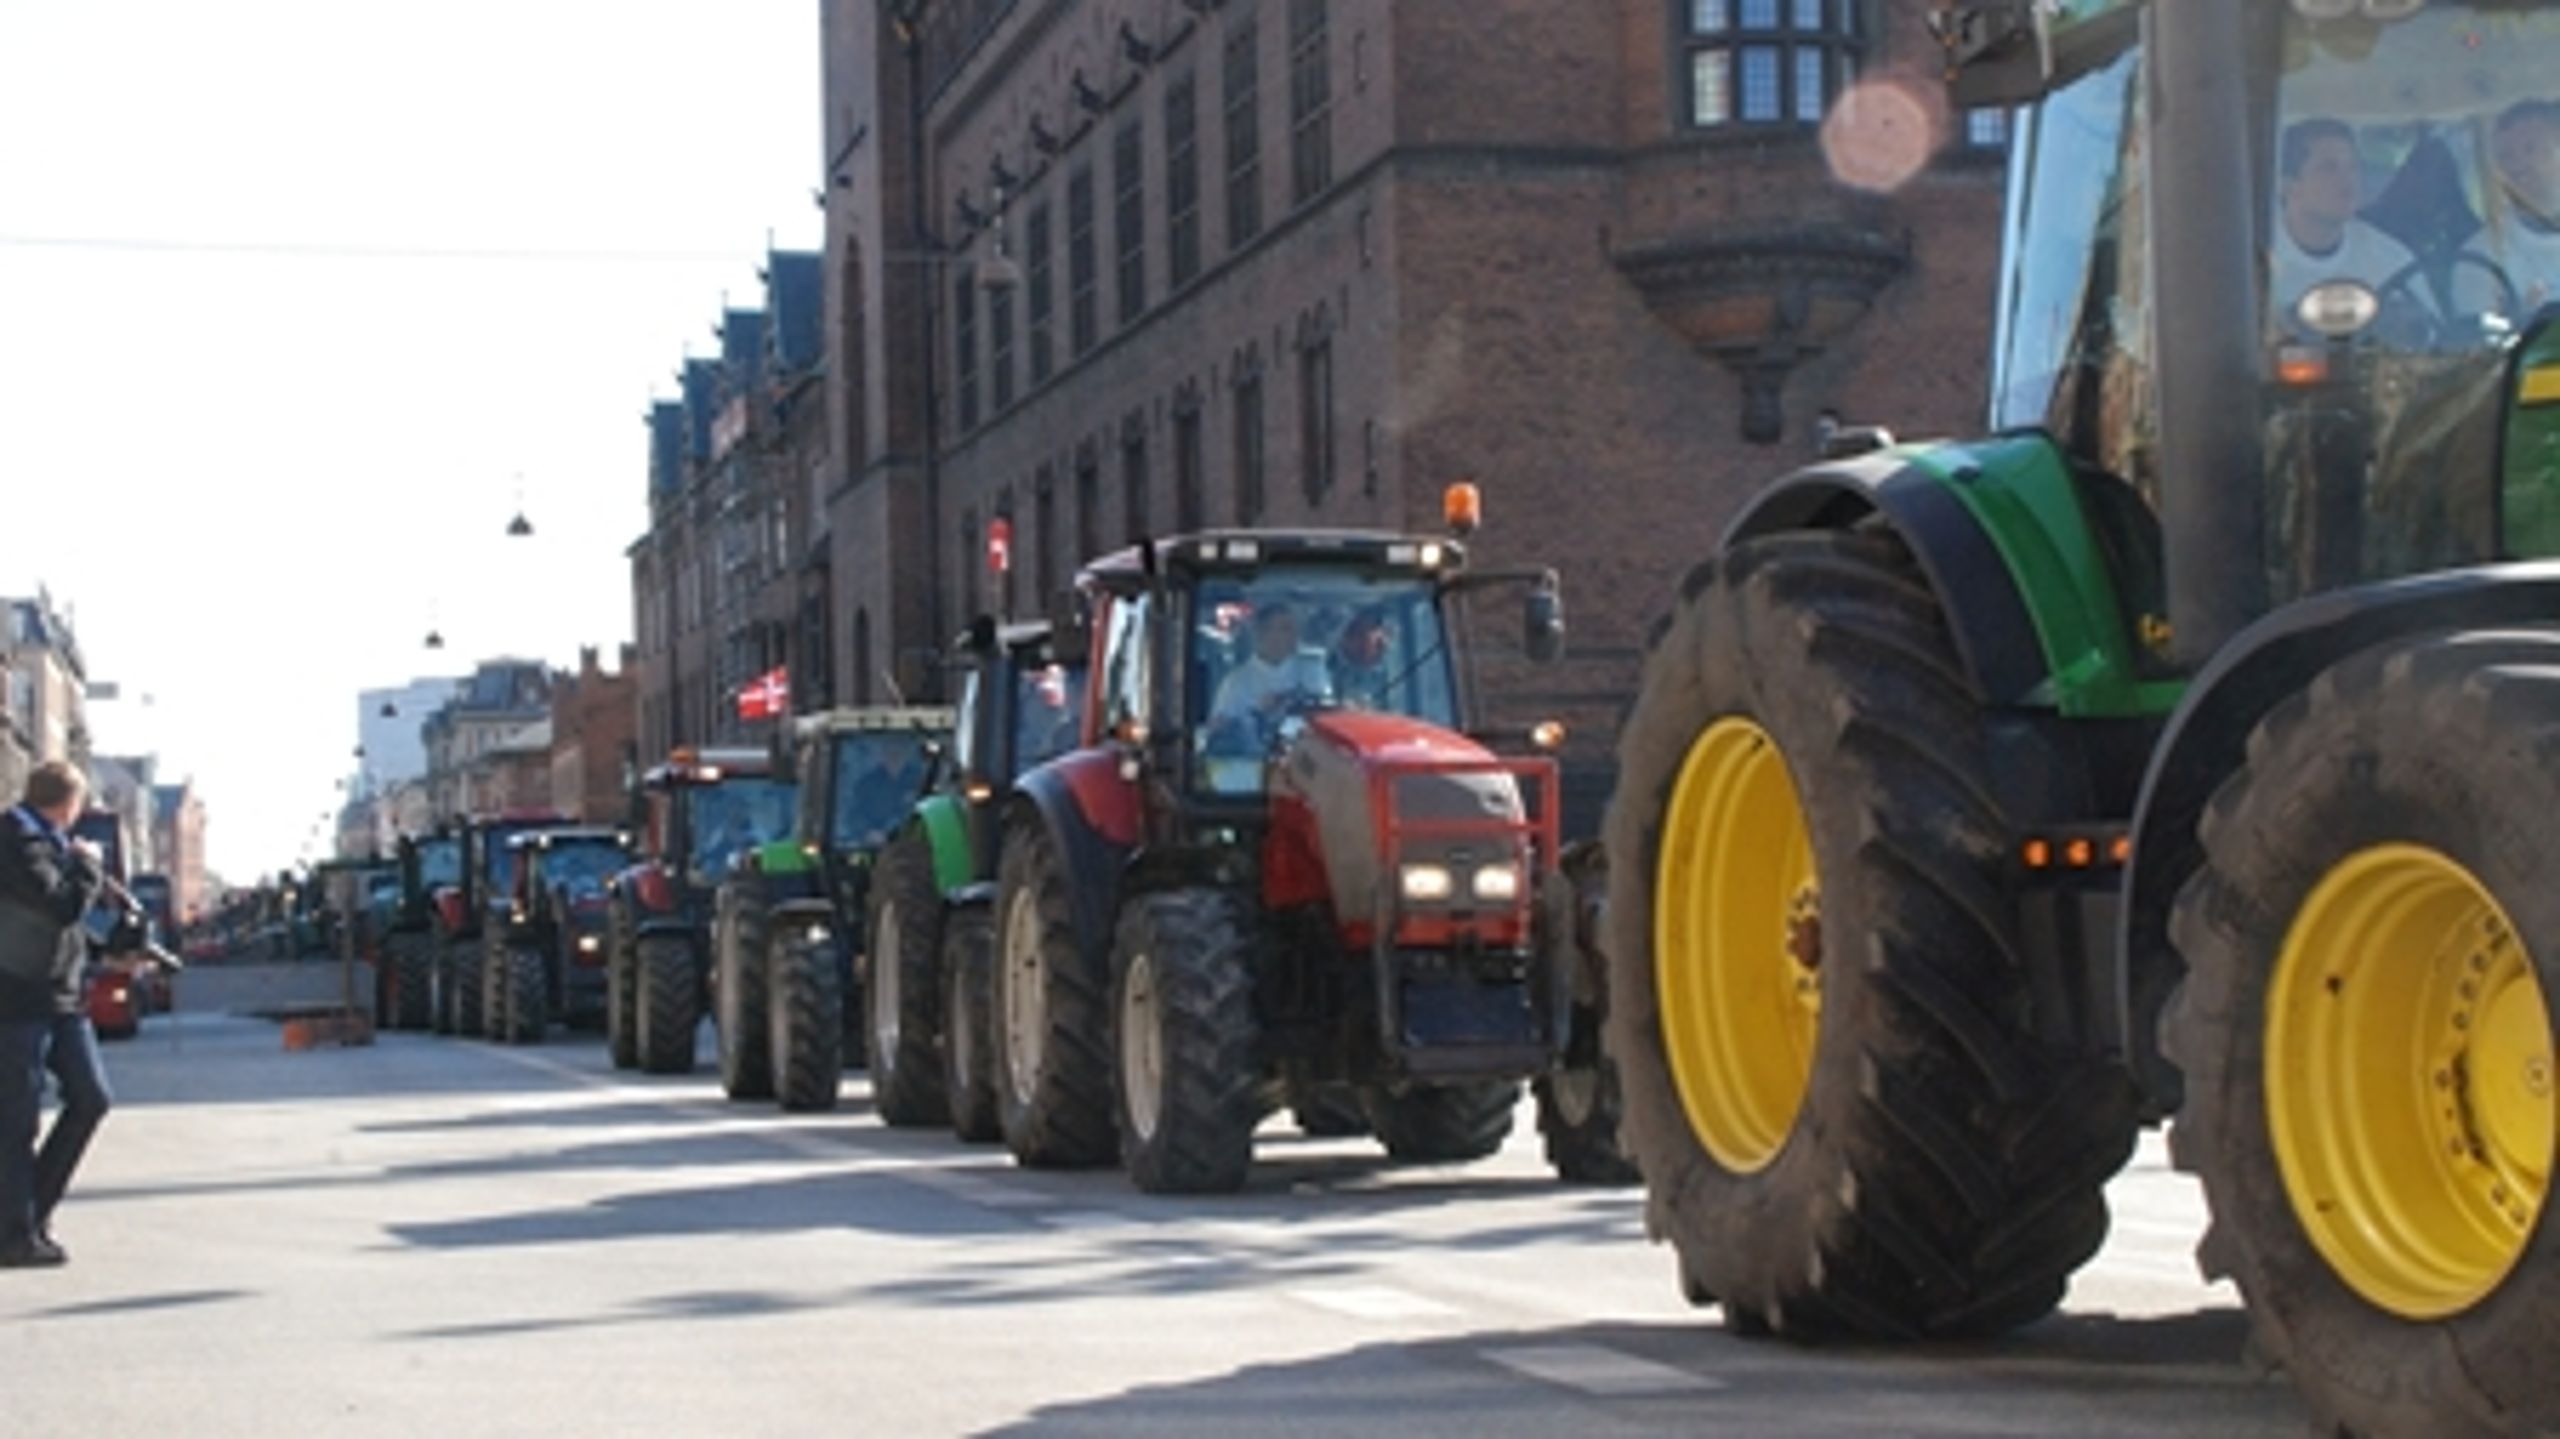 Samtidig med Bæredygtigt Landbrugs konference på Christiansborg havde flere hundrede landmænd i traktorer indtaget København i protest mod regeringens aftale Grøn Vækst.